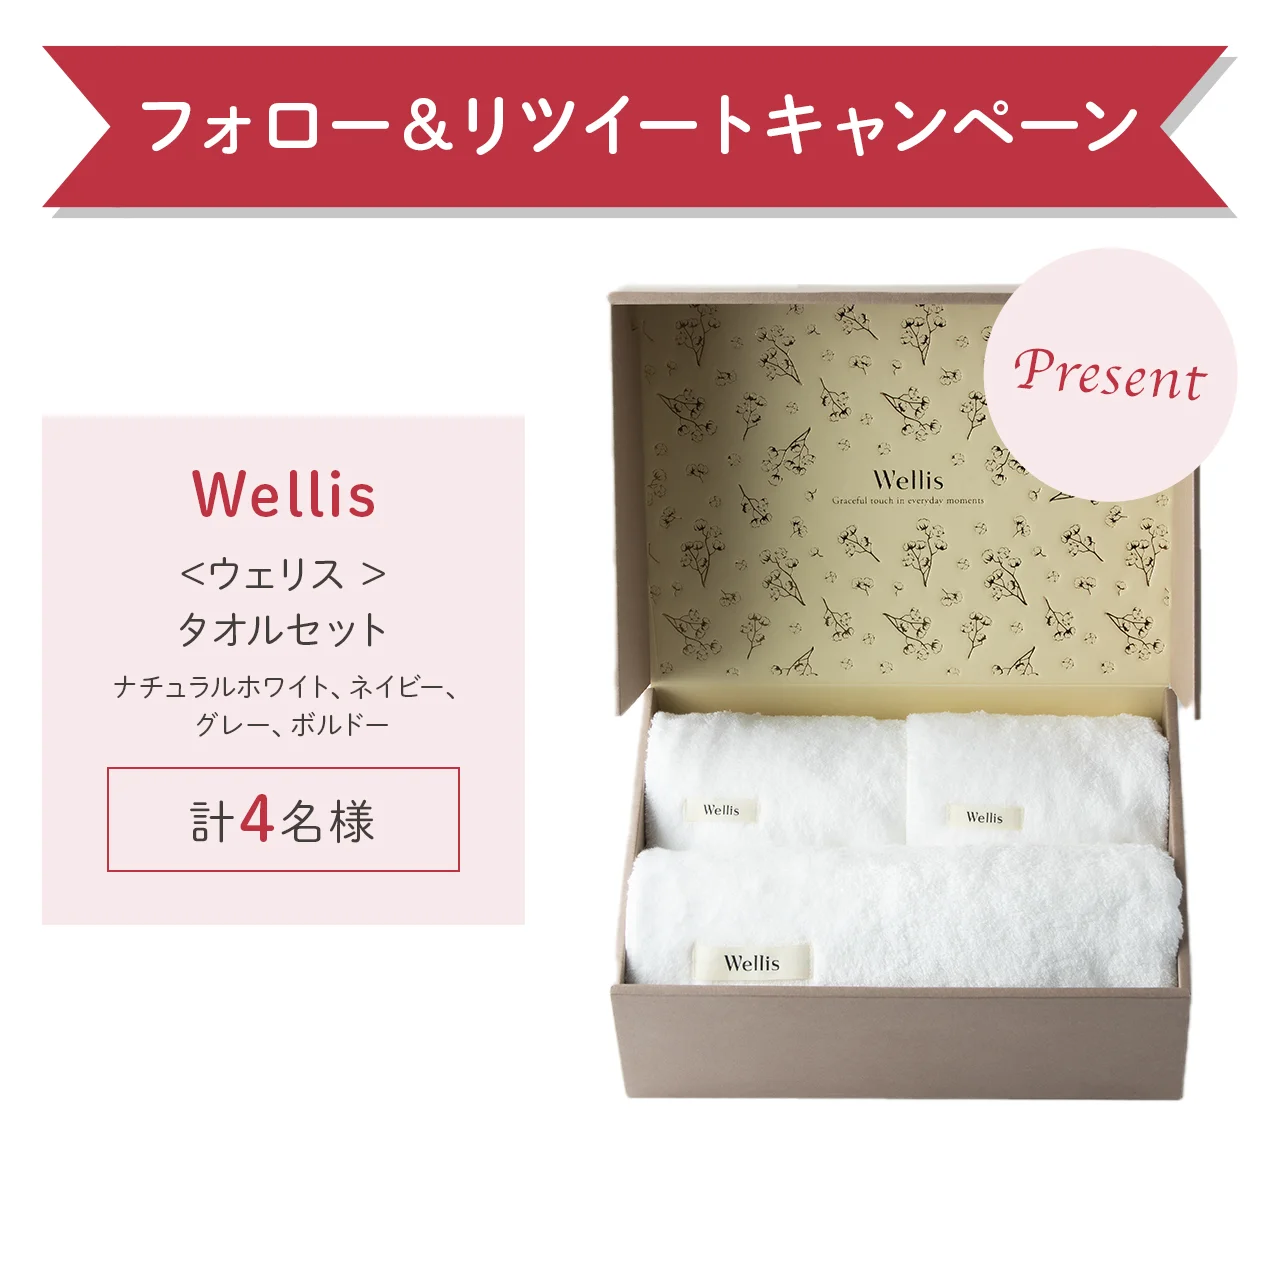 日本最高峰の職人技と織りが“極上の肌心地”を実現した「Wellis」のタオルセット（¥15,400）をプレゼント！